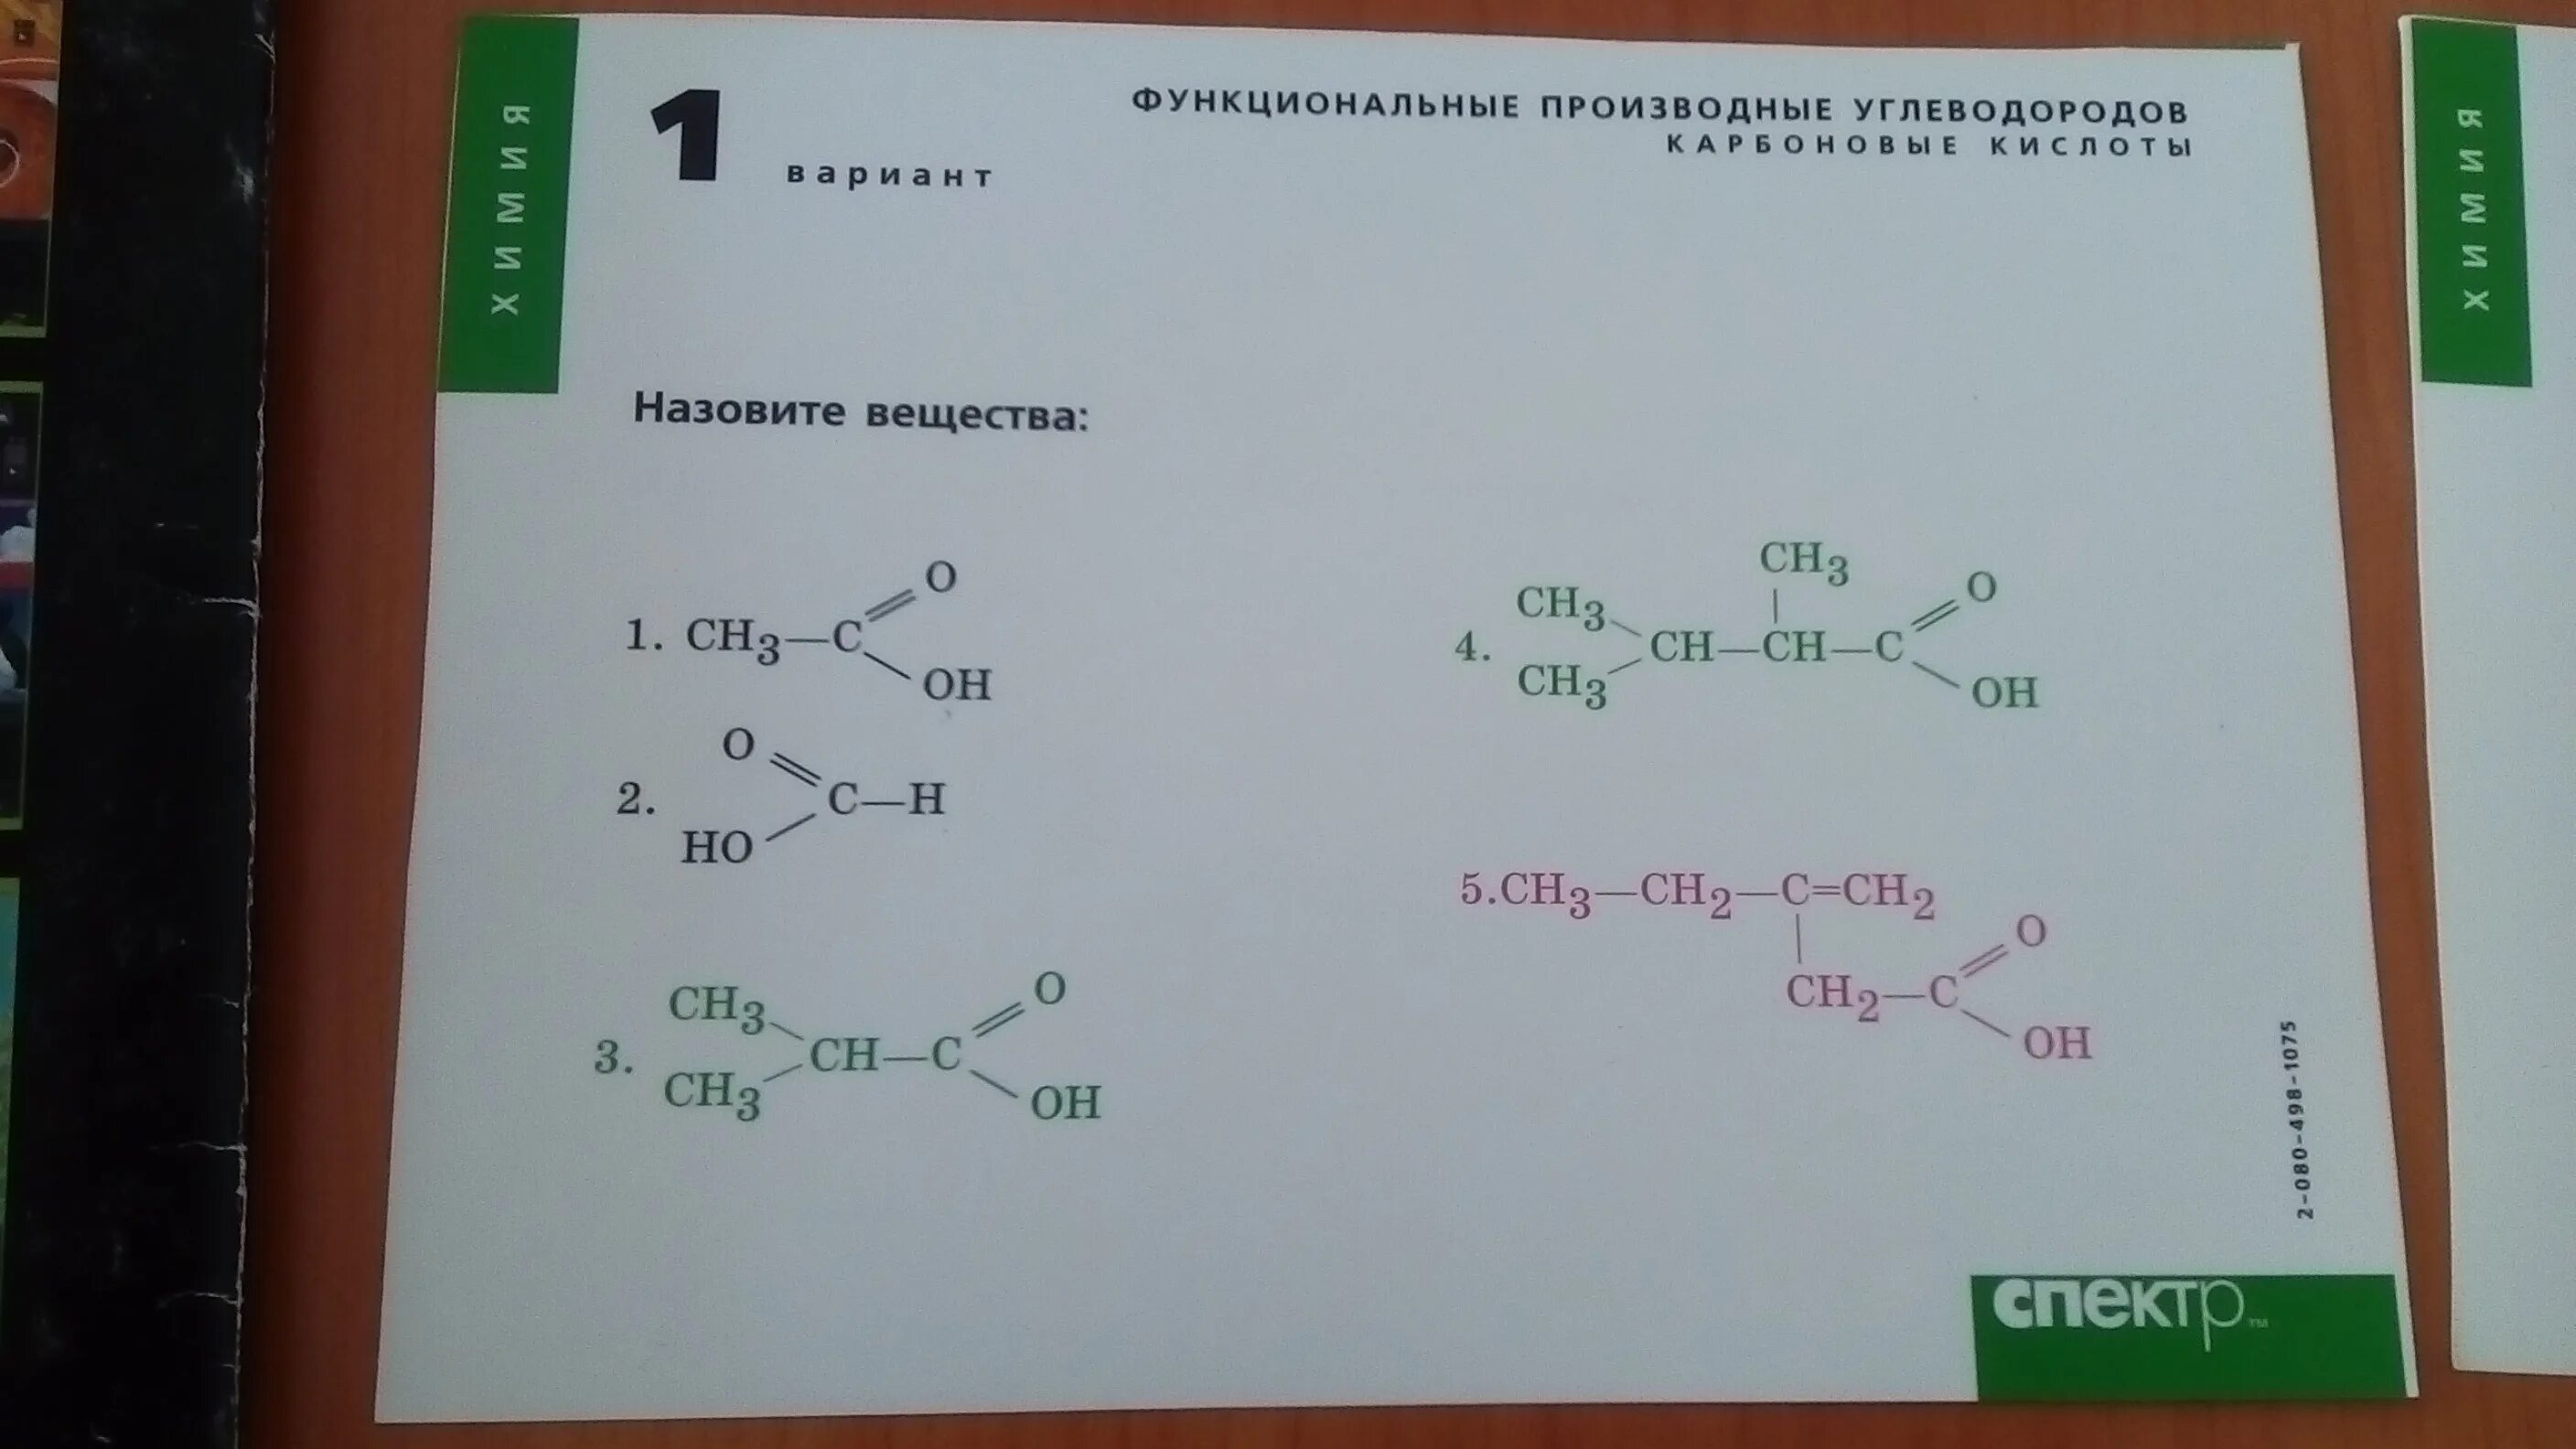 Тест по химии 10 класс карбоновые кислоты. Функциональные производные углеводородов. Функциональные производные химия. Производная углеводорода.